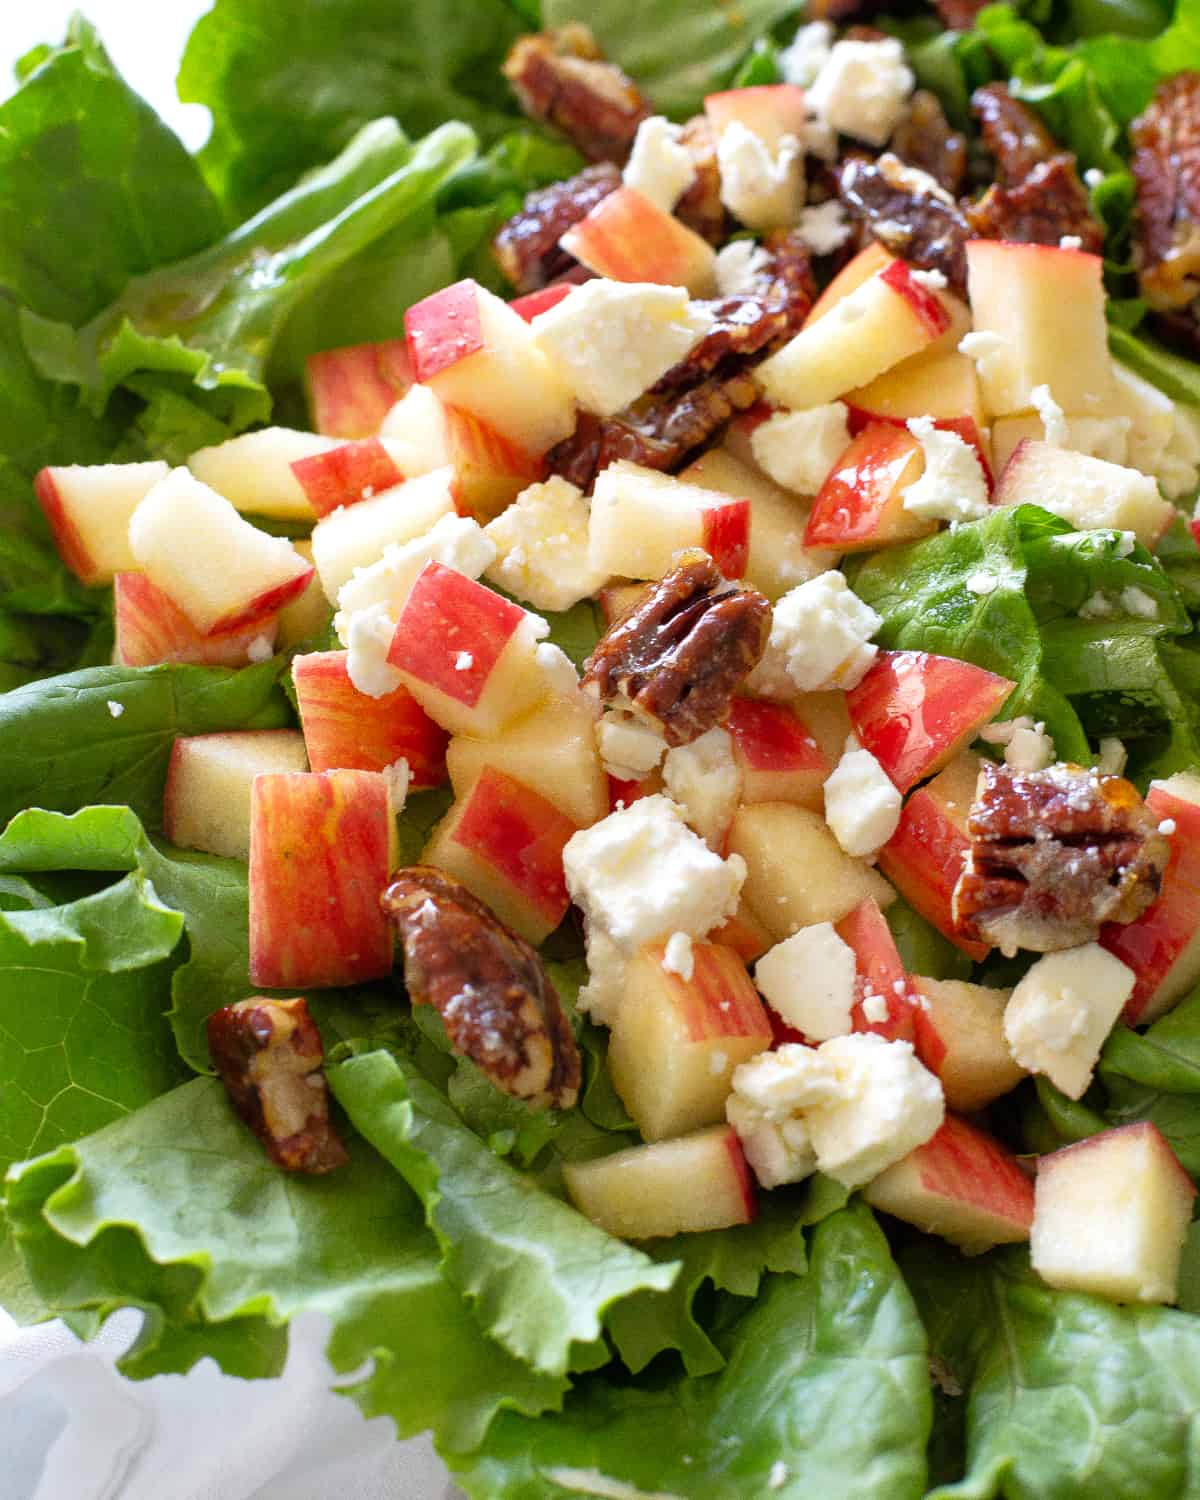 Pecan and Apple Salad é a minha salada preferida para os potlucks.  Nozes cristalizadas, maçãs frescas e queijo tornam esta salada única e cheia de sabor!  #maçã #pecan #salada